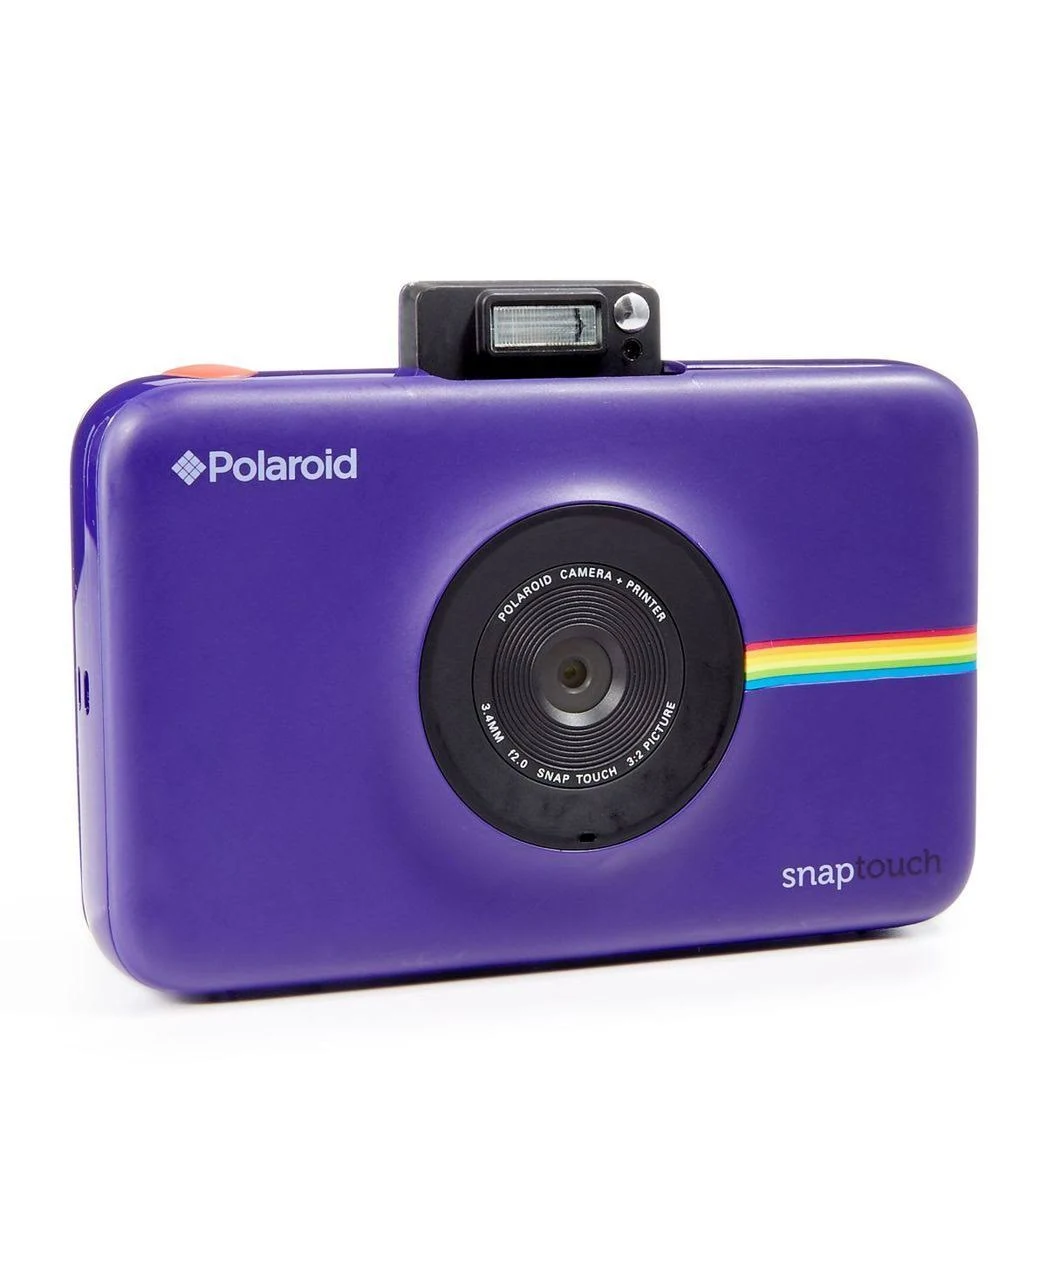  Polaroid स्नैप टच इंस्टेंट प्रिंट डिजिटल कैमरा विथ एलसीडी डिस्प्ले (पर्पल) जिंक...